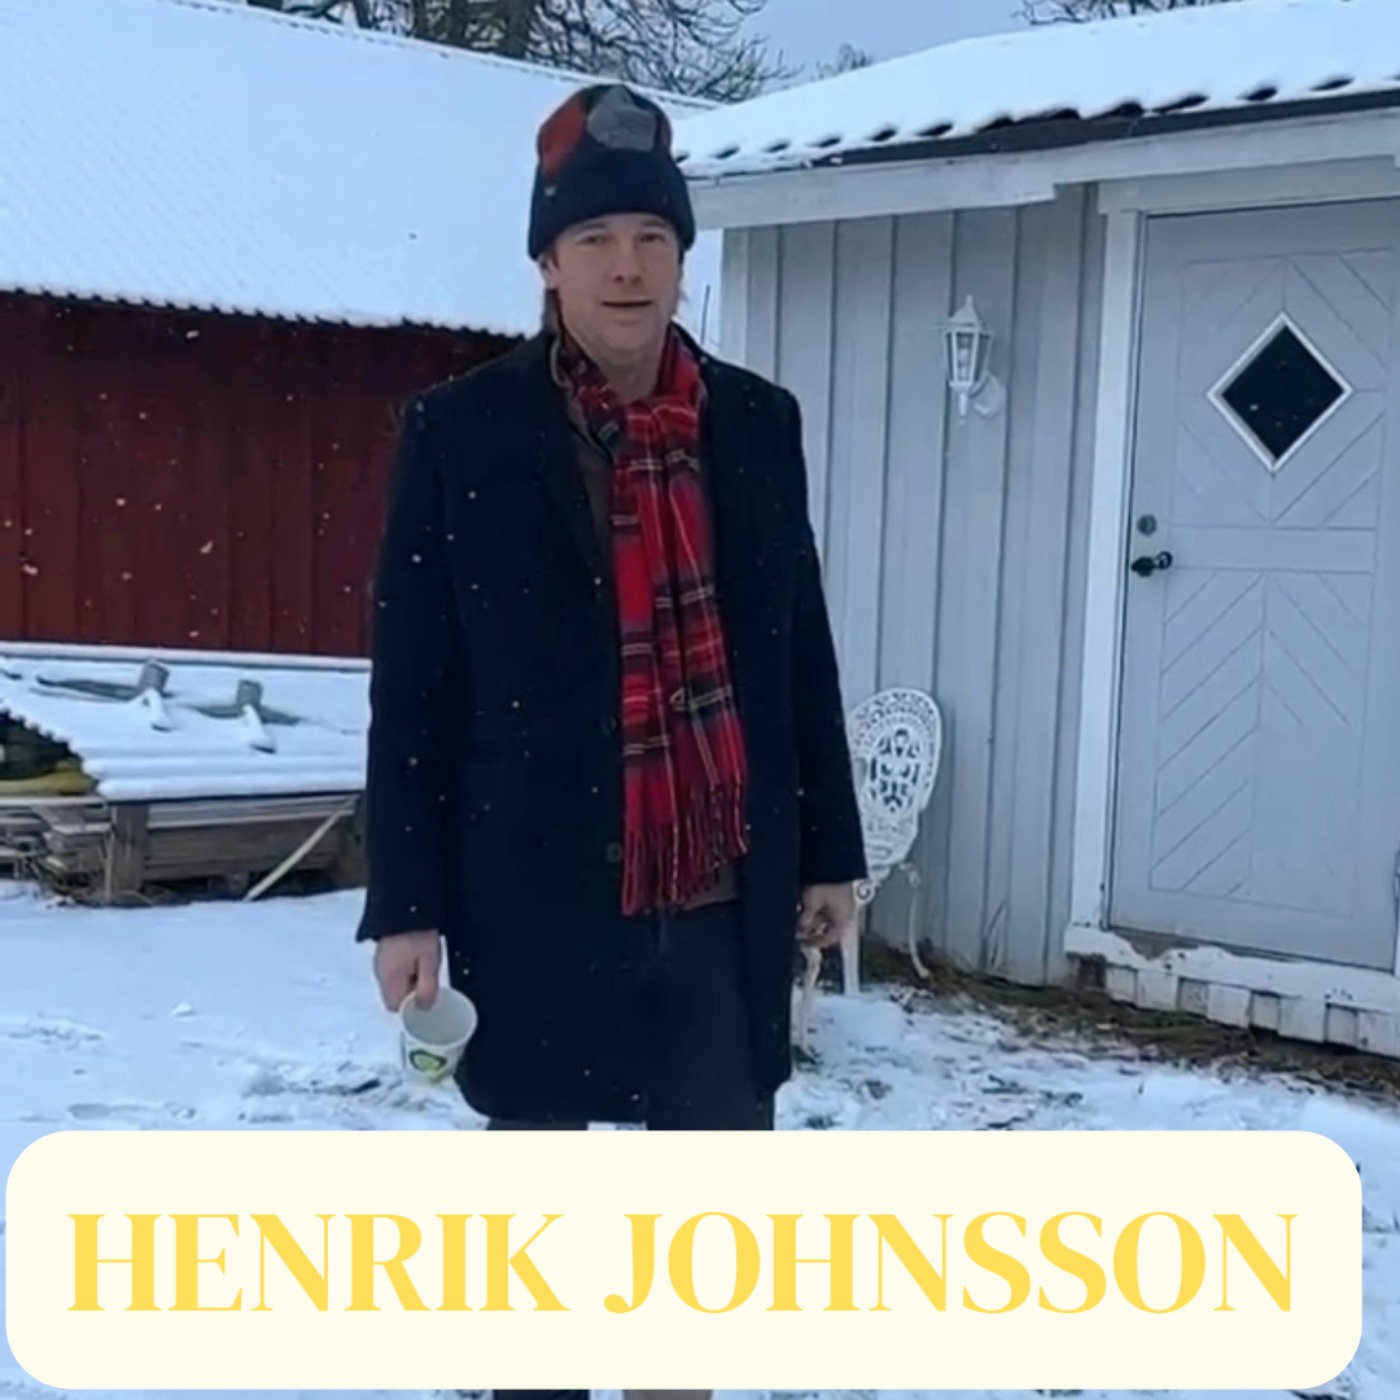 Henrik Johnsson